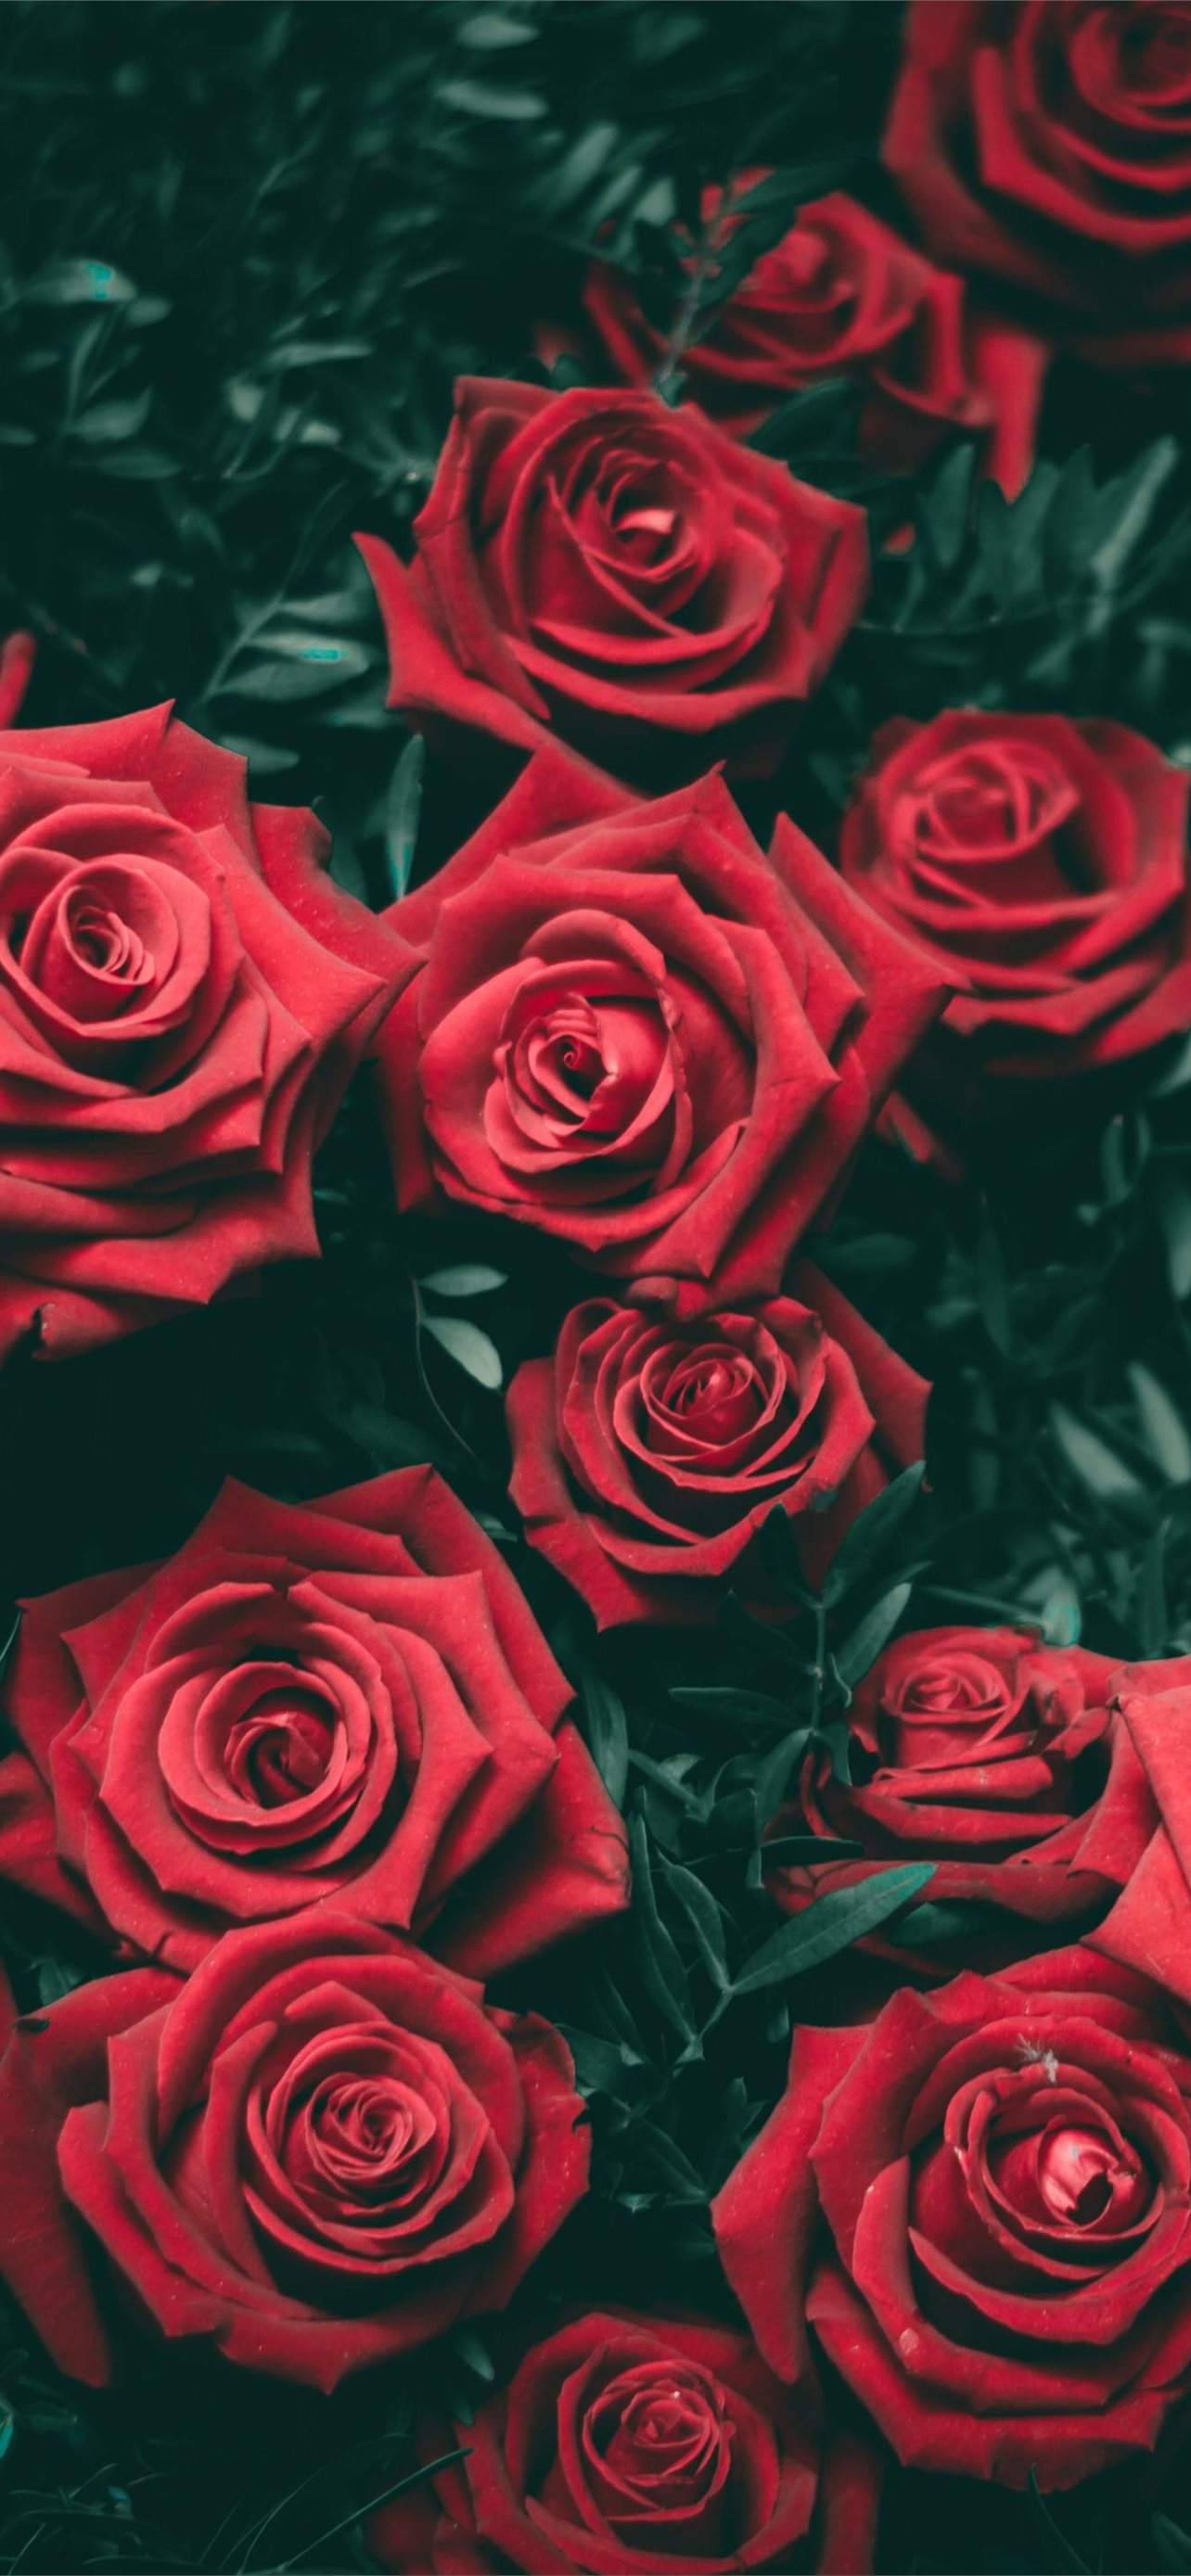 roses iPhone wallpaper 